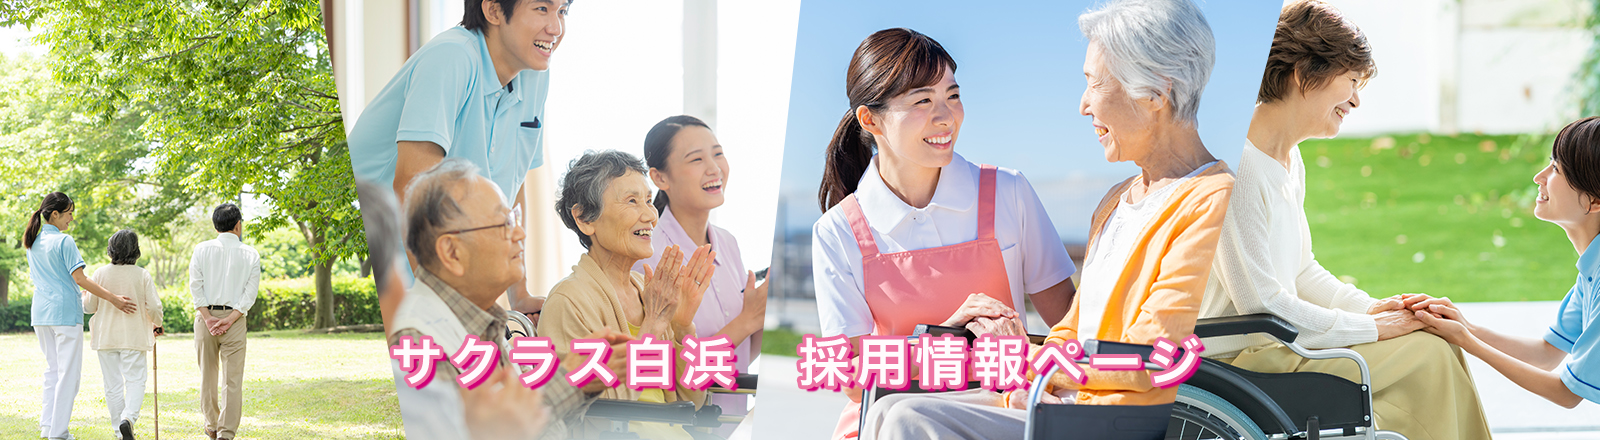 サクラス白浜 2022年3月 姫路市白浜にサービス付き高齢住宅がOPENします